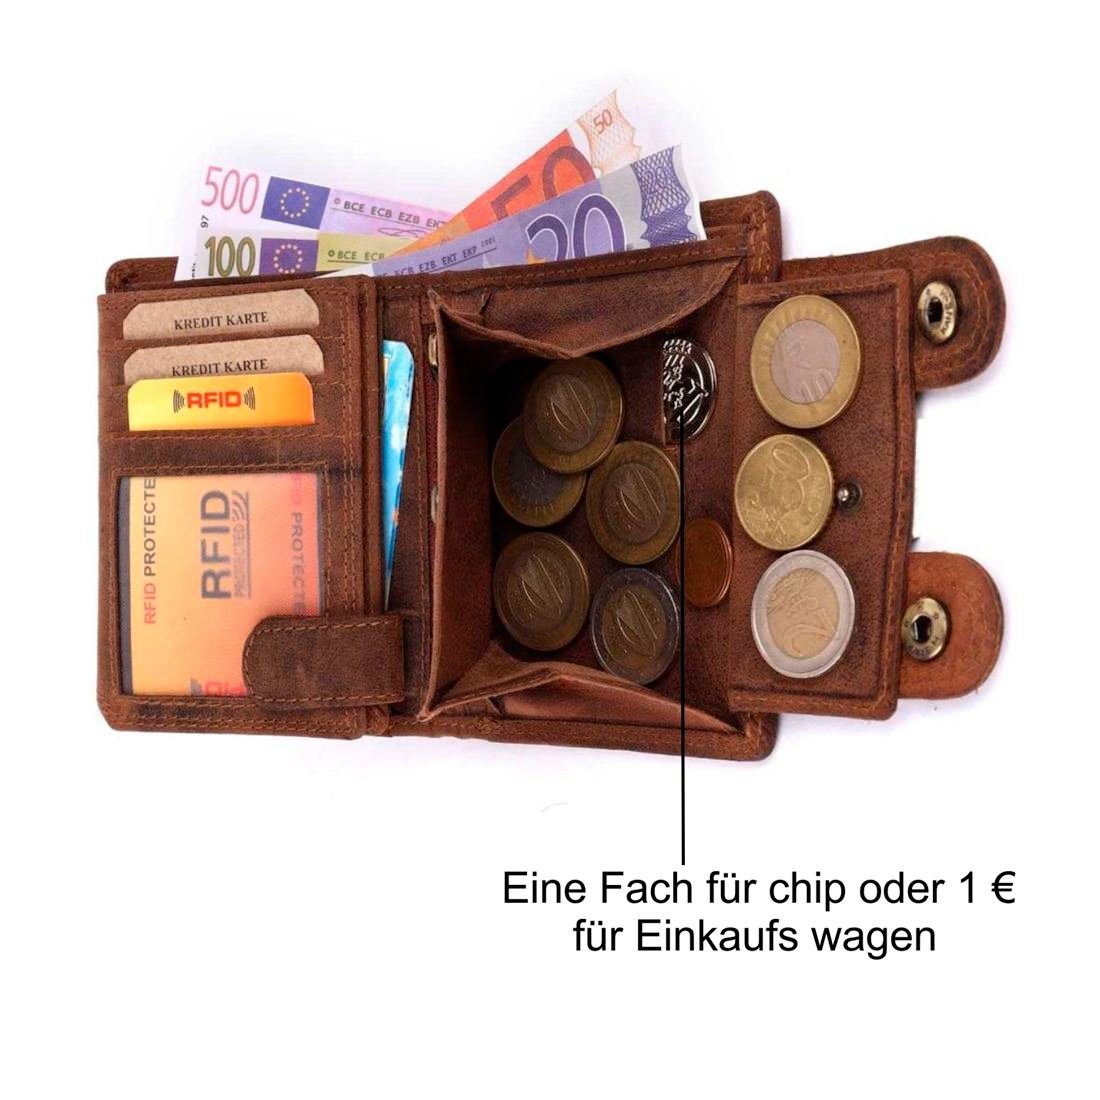 SHG Geldbörse Herren Leder RFID mit Portemonnaie, Büffelleder Kette Lederbörse mit Münzfach Börse Schutz